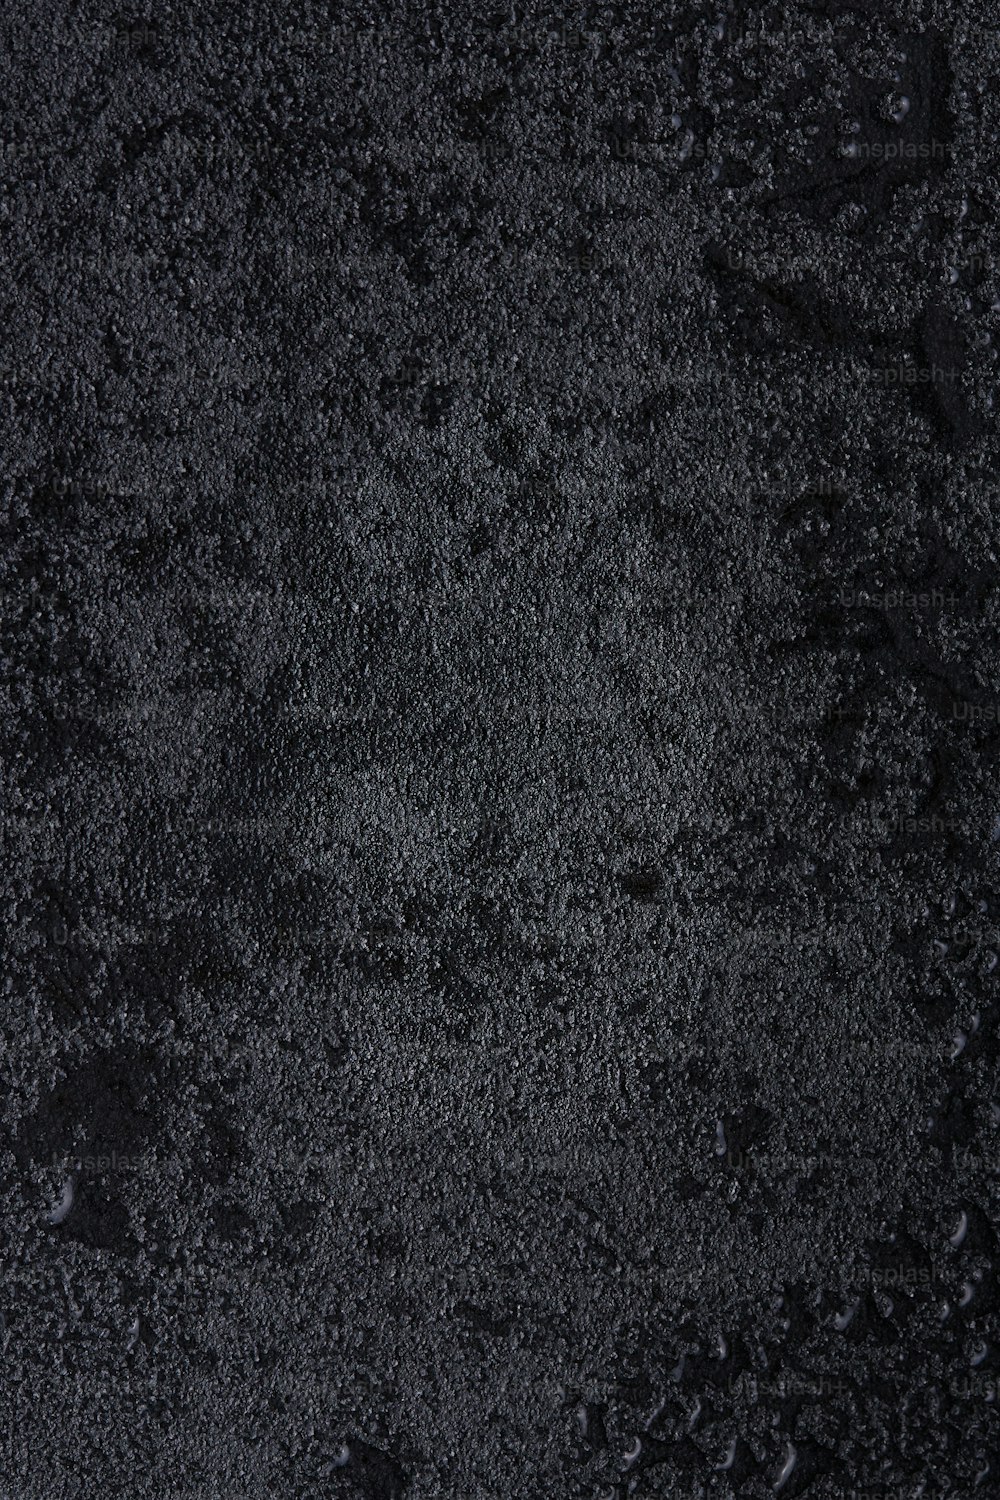 um close up de uma superfície preta com gotas de água